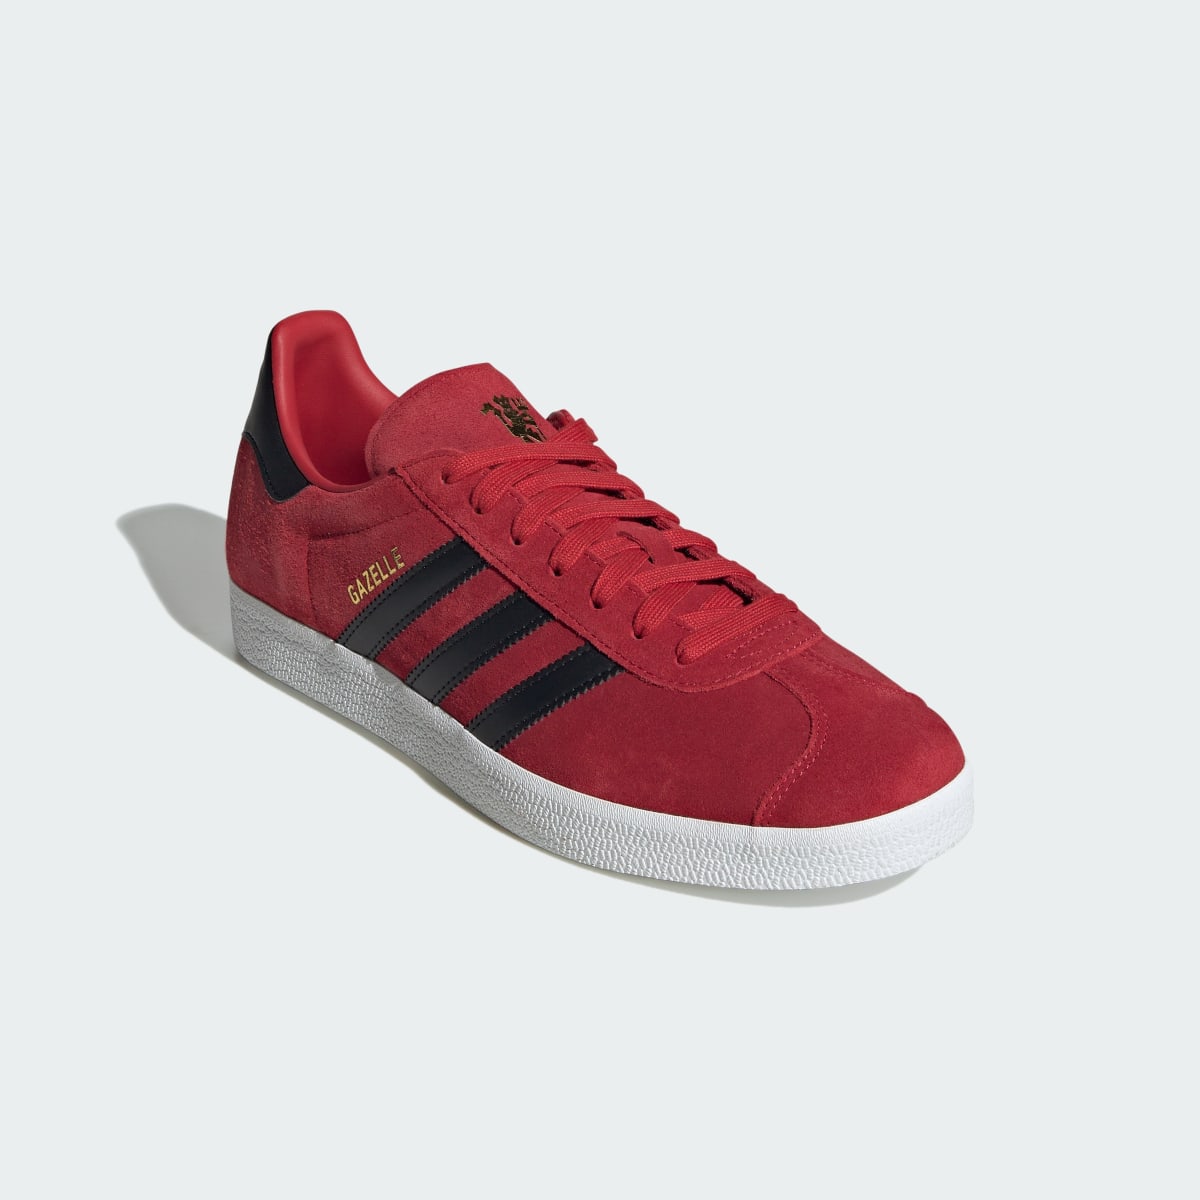 Adidas Gazelle Manchester United Shoes. 5